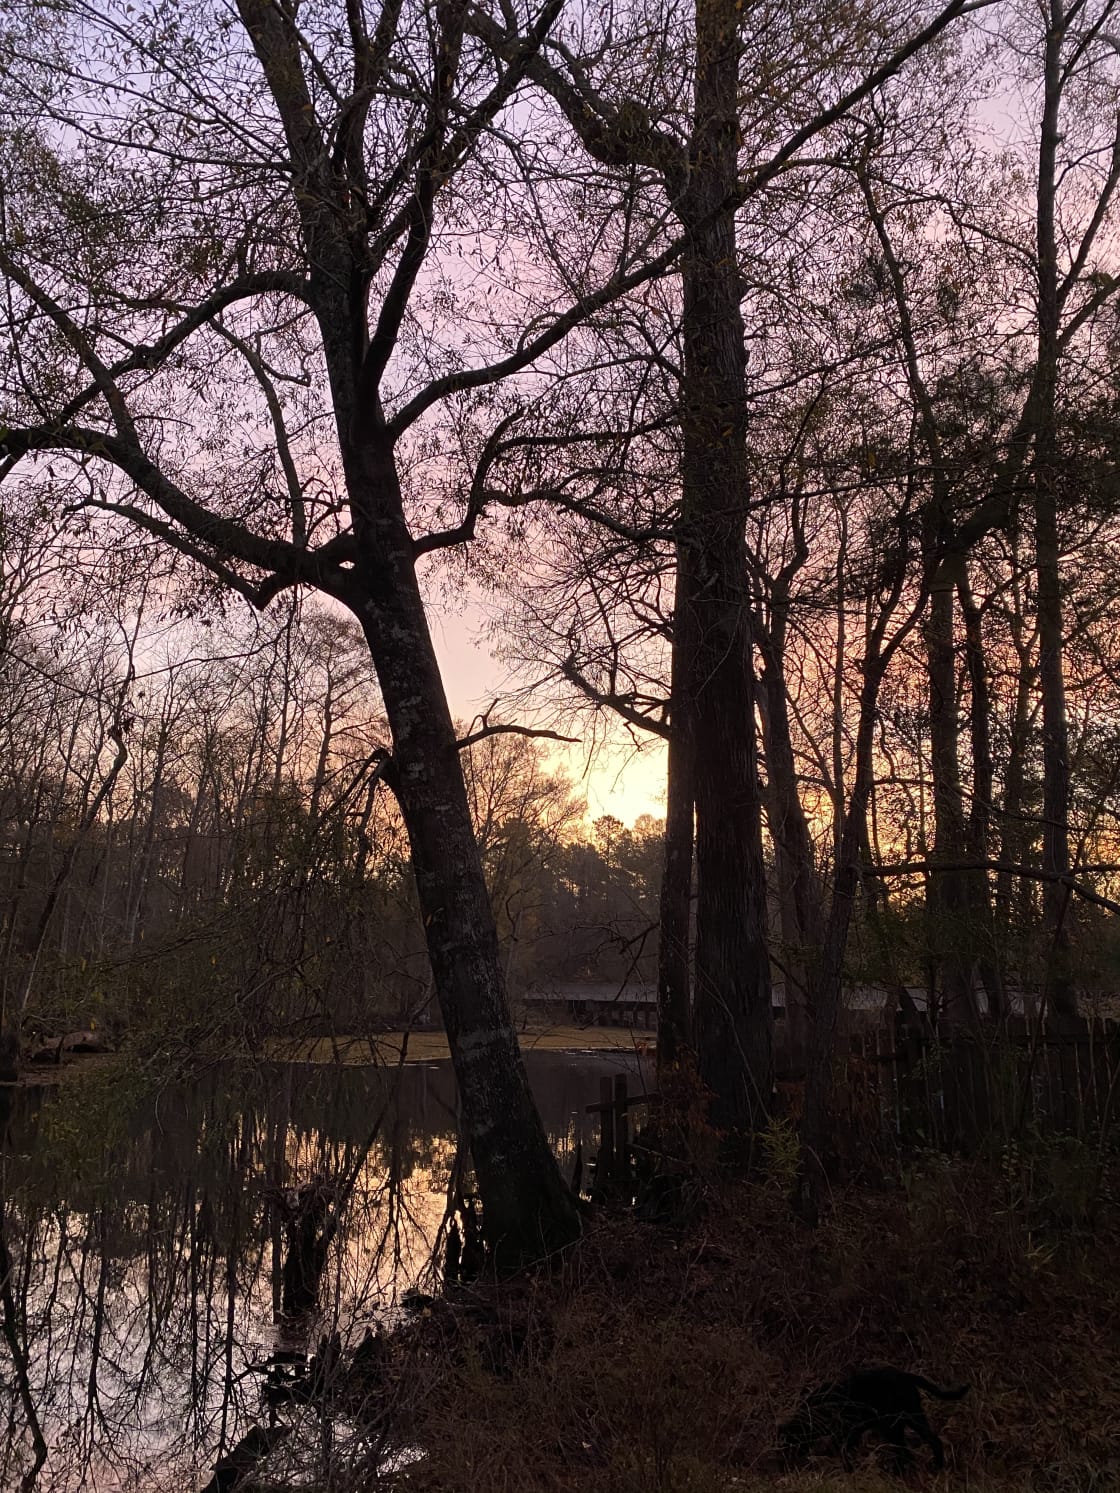 Sunrise on the creek.